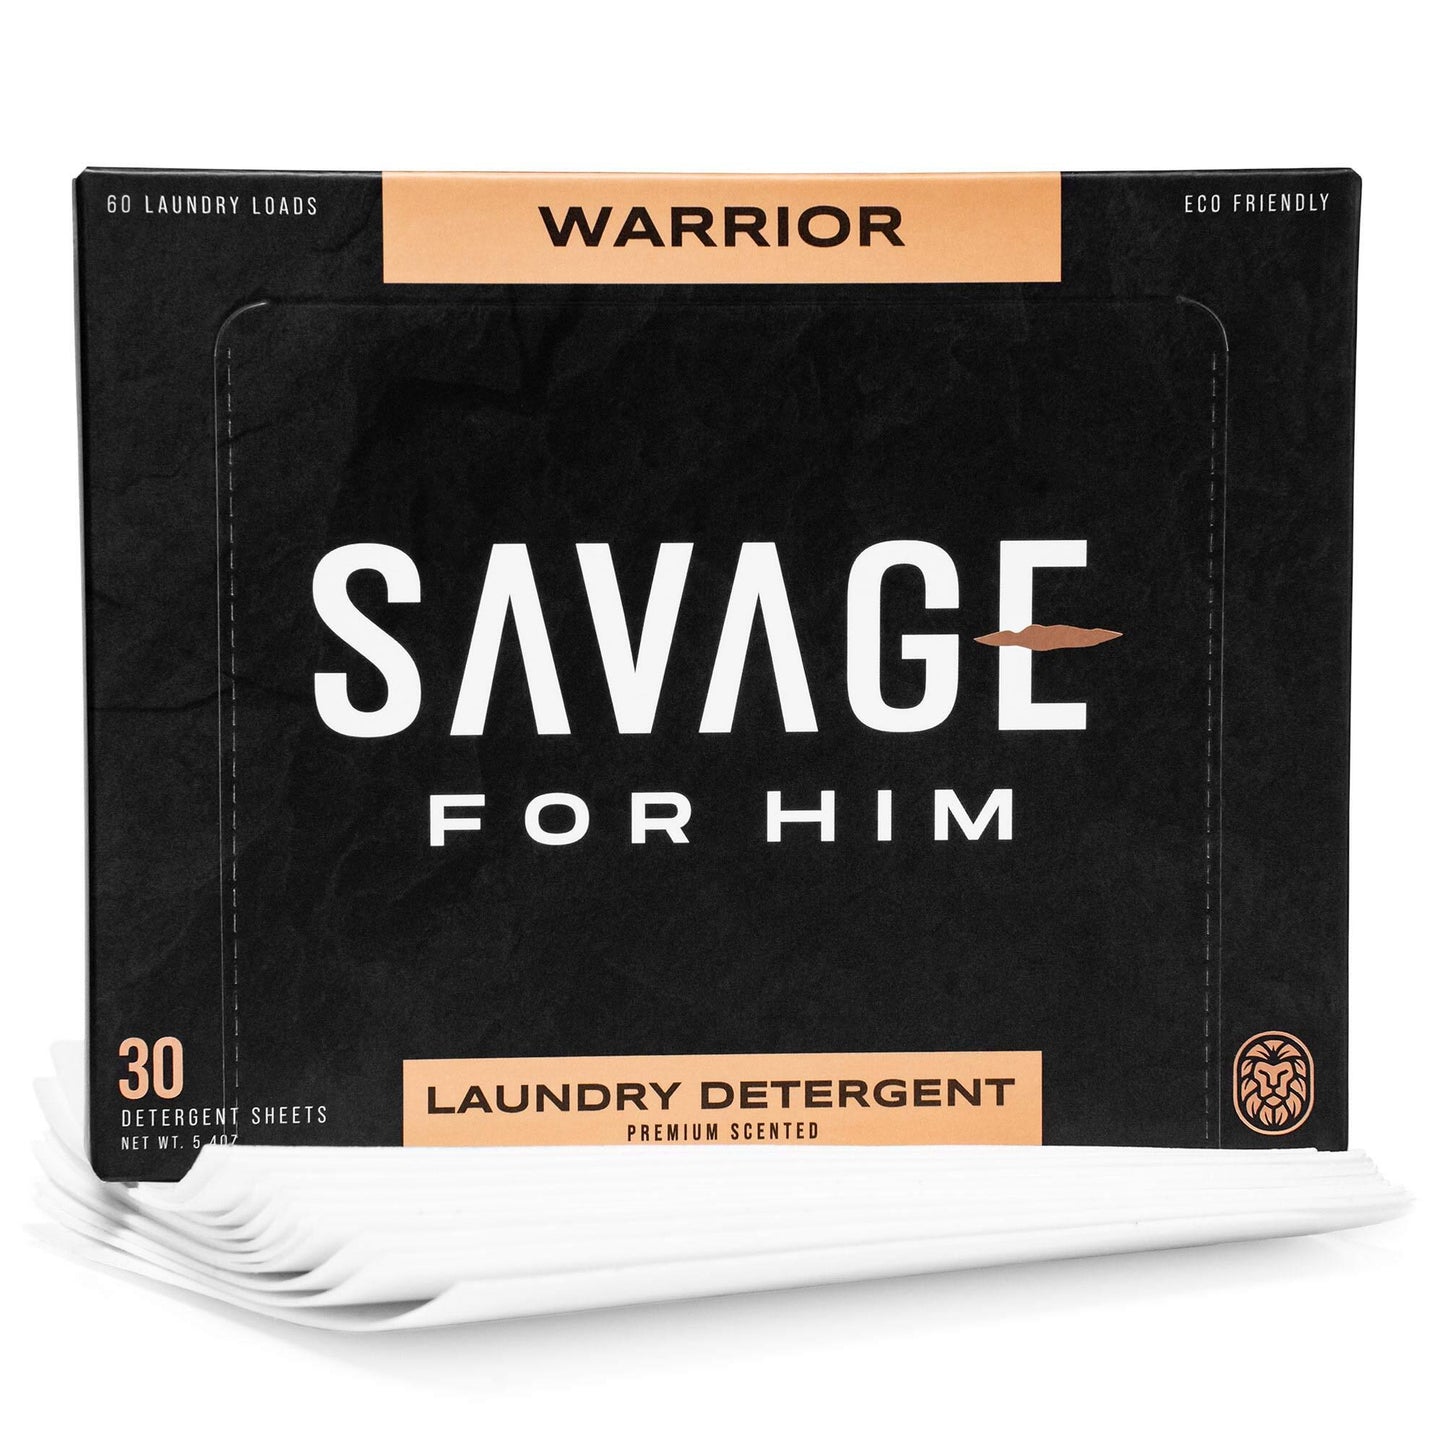 https://savageforhim.com/cdn/shop/files/05-Detergent-product-V2.jpg?v=1691772046&width=1445